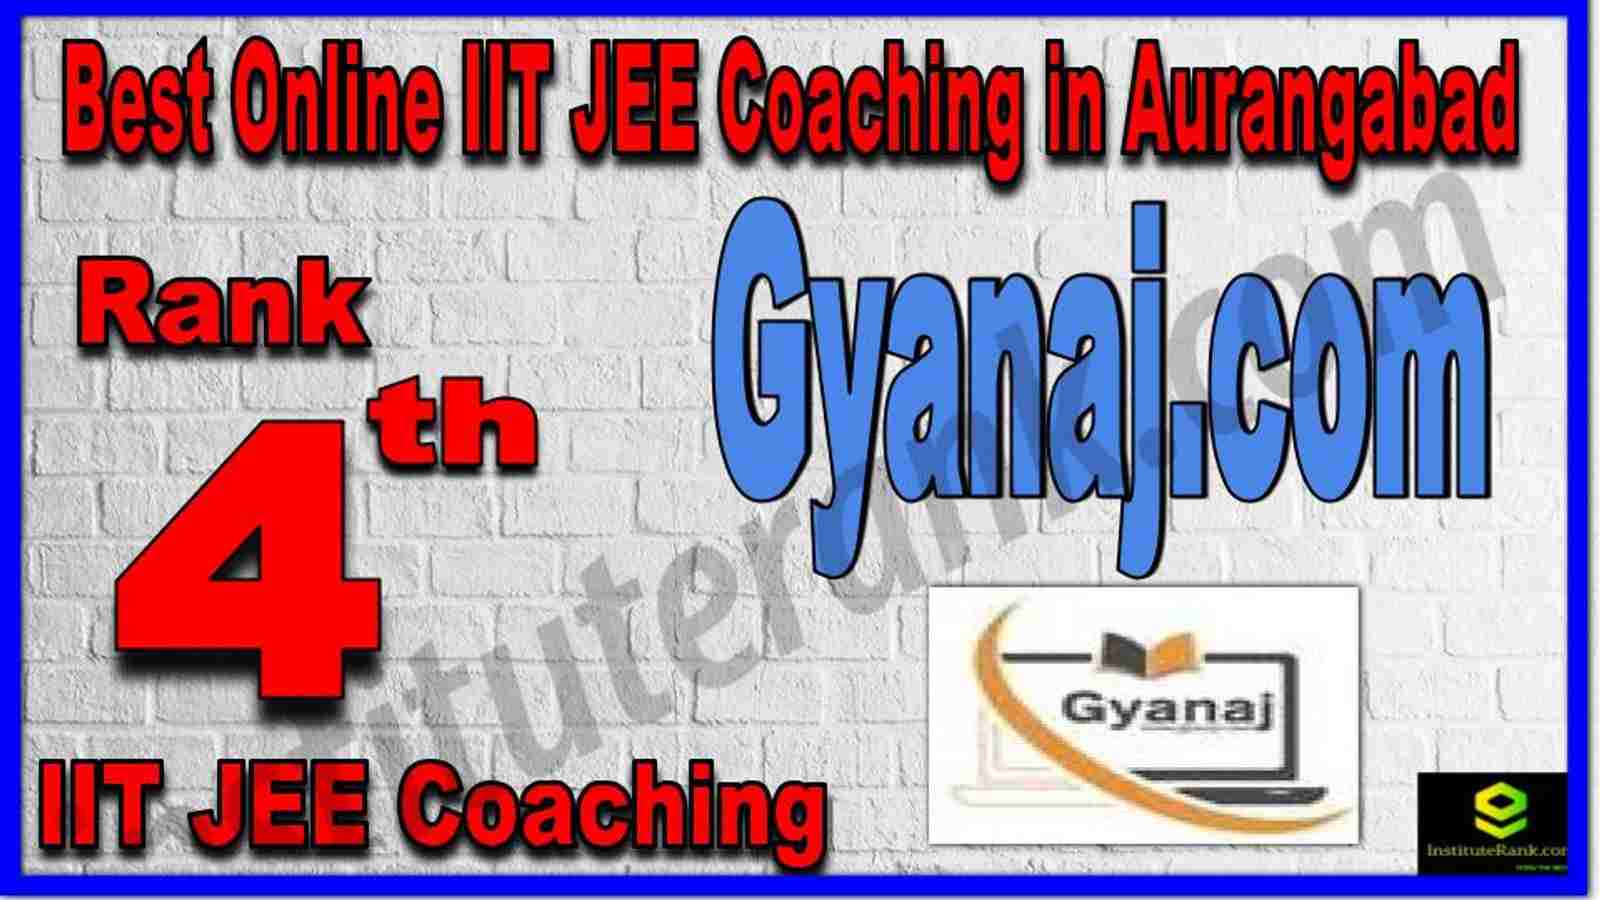 Rank 4th Best Online IIT JEE Coaching in Aurangabad